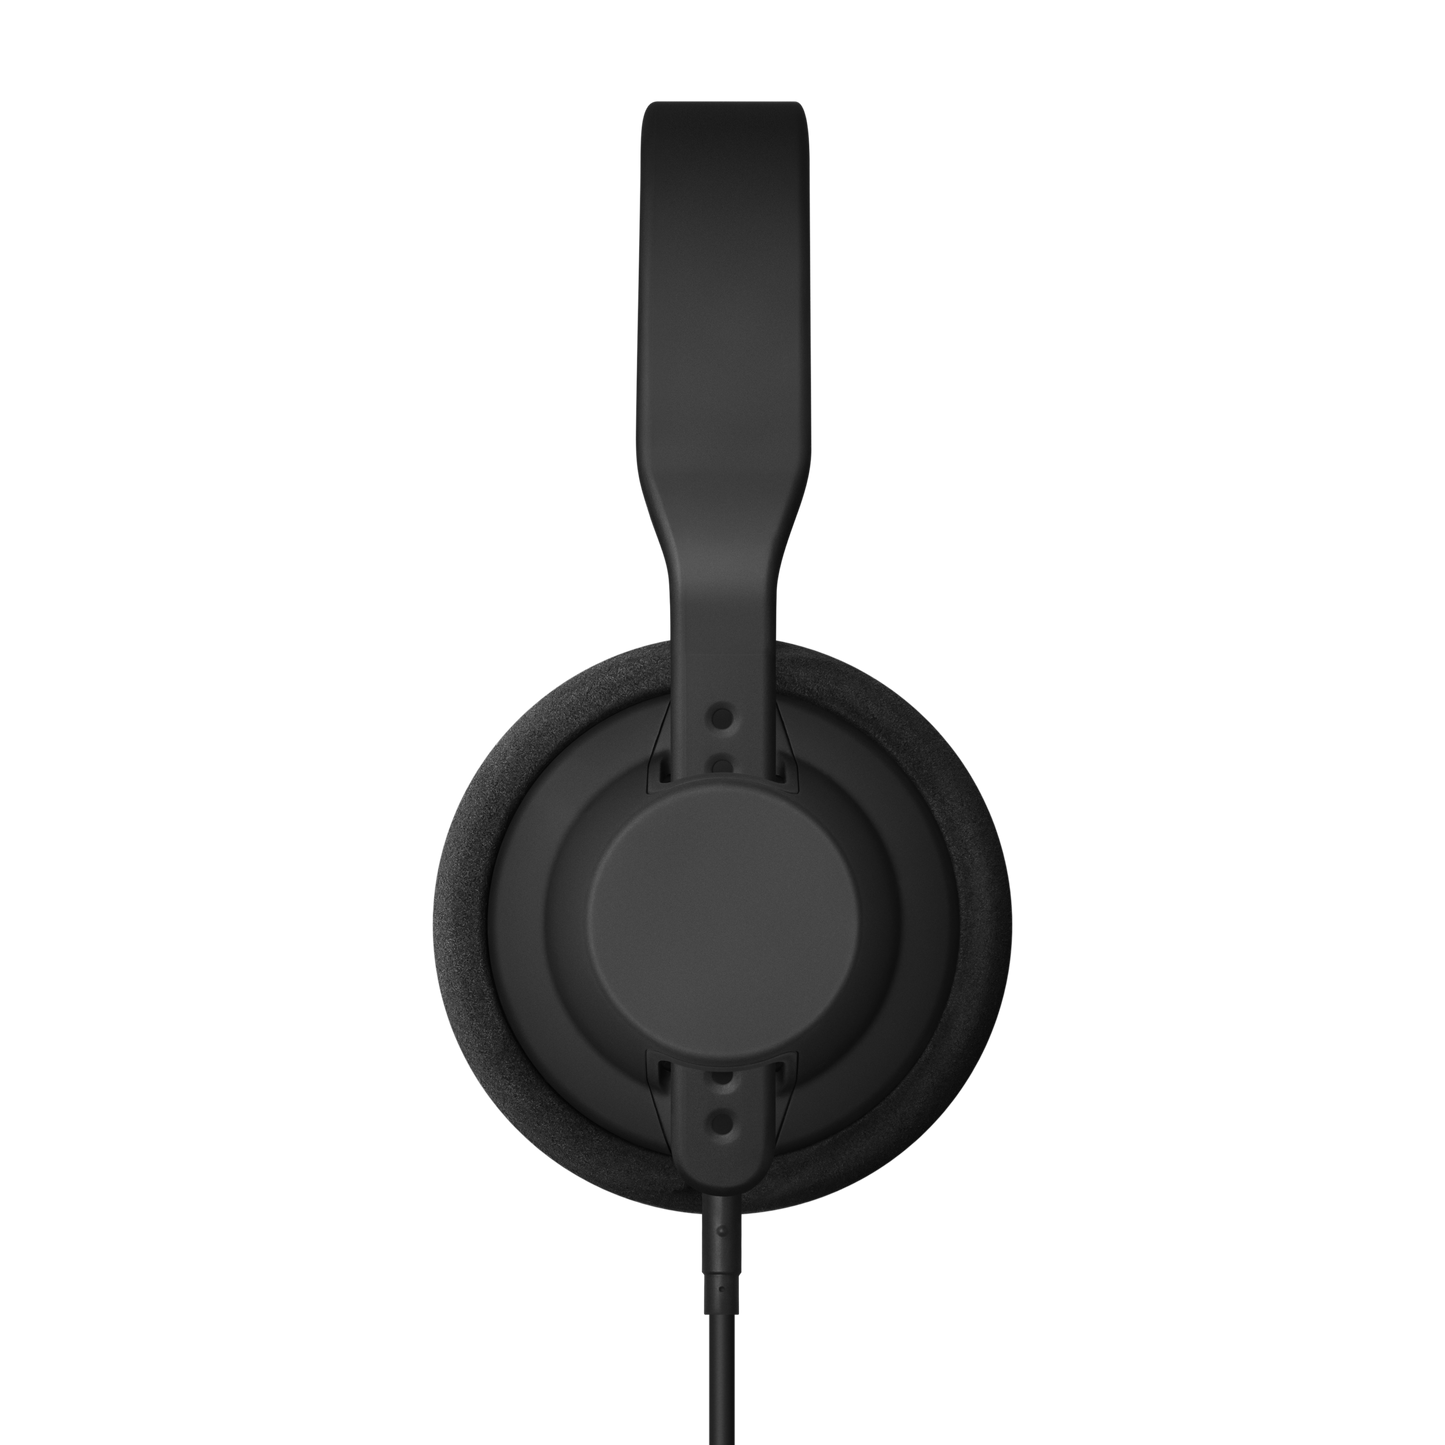 TMA-2 Studio Headphones